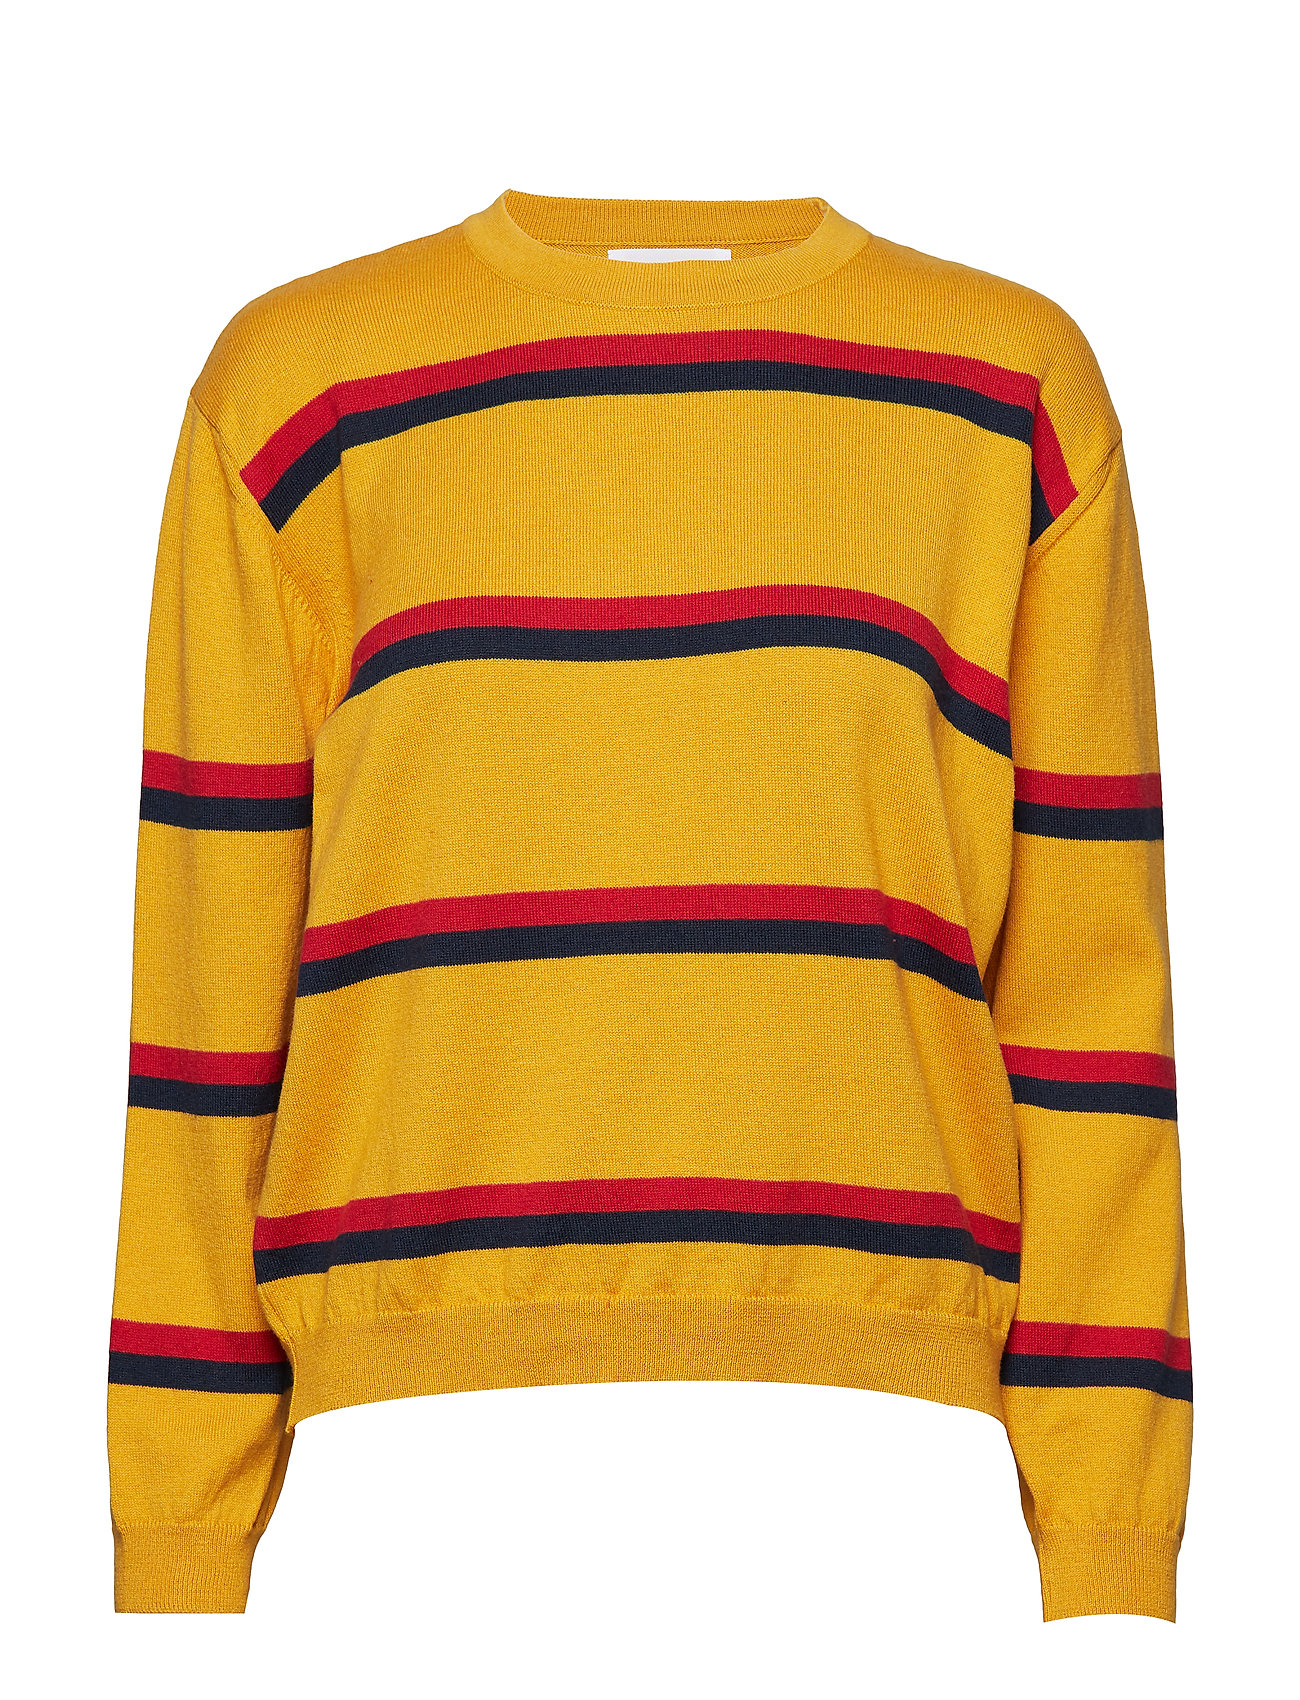 Libertine-Libertine Yellow Ocher Cotton Call Stripes Knit Longsleeve Sweater